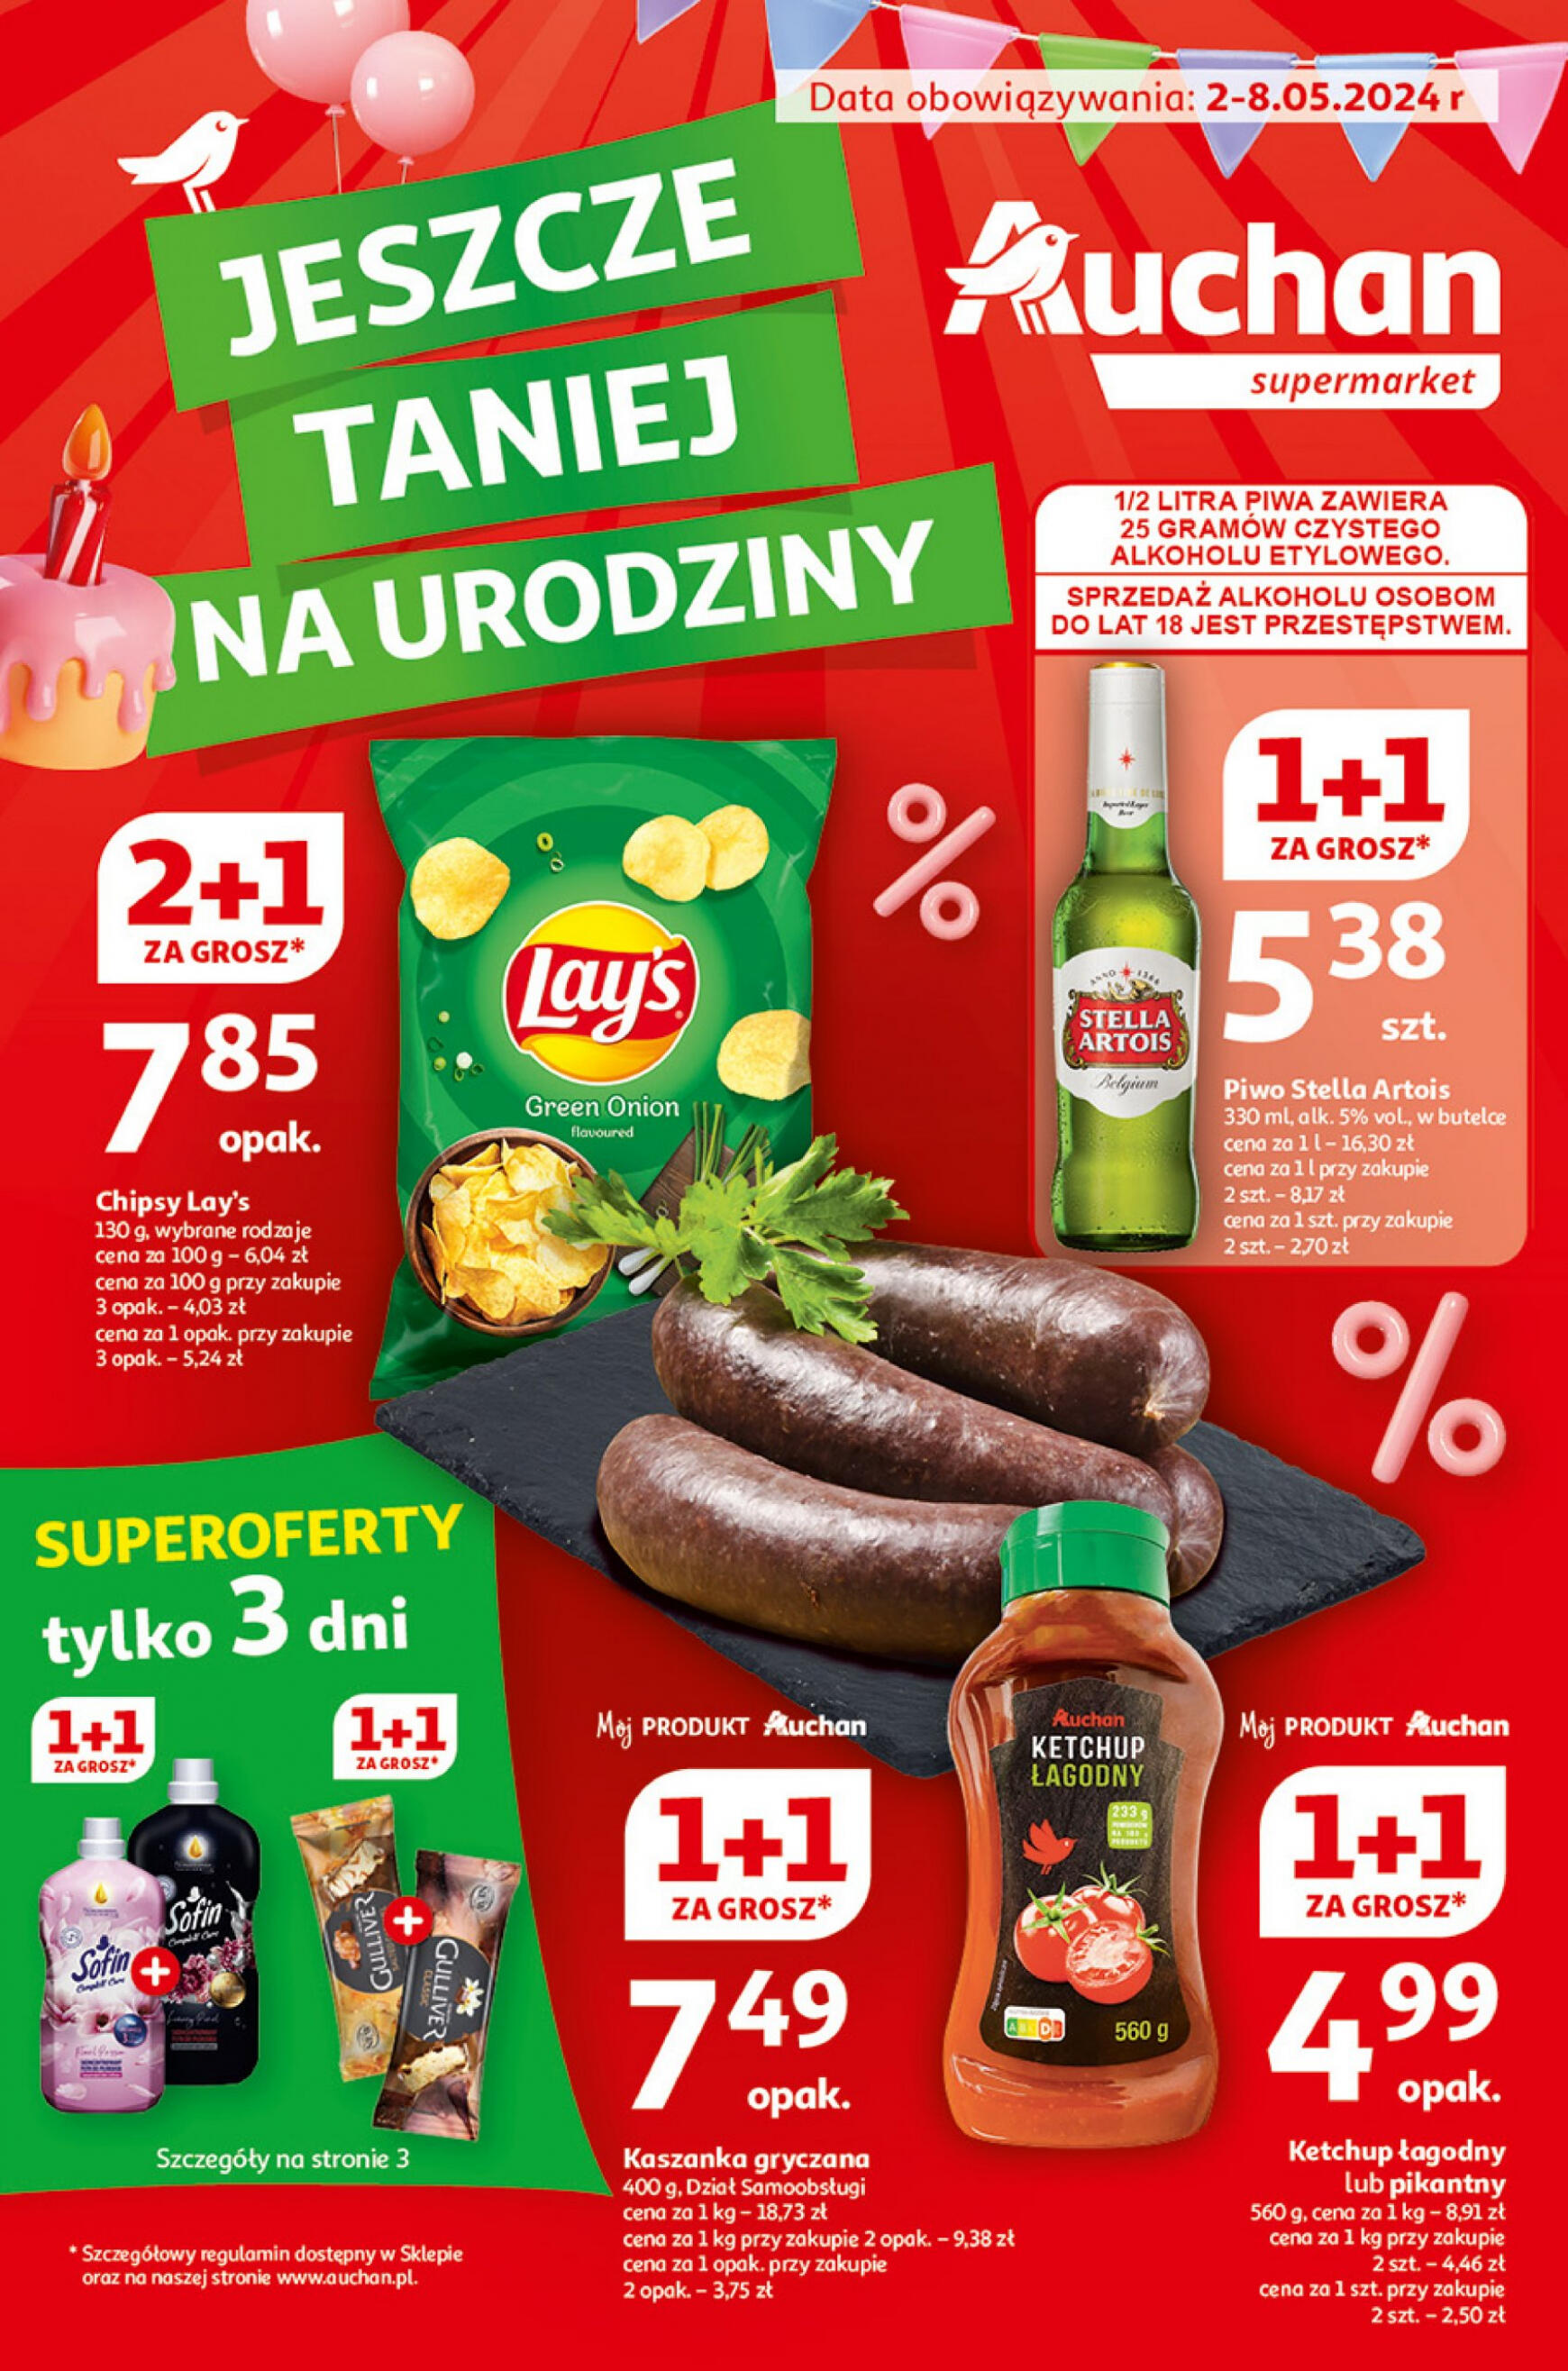 auchan - Supermarket Auchan - Gazetka Jeszcze taniej na urodziny gazetka aktualna ważna od 02.05. - 08.05.